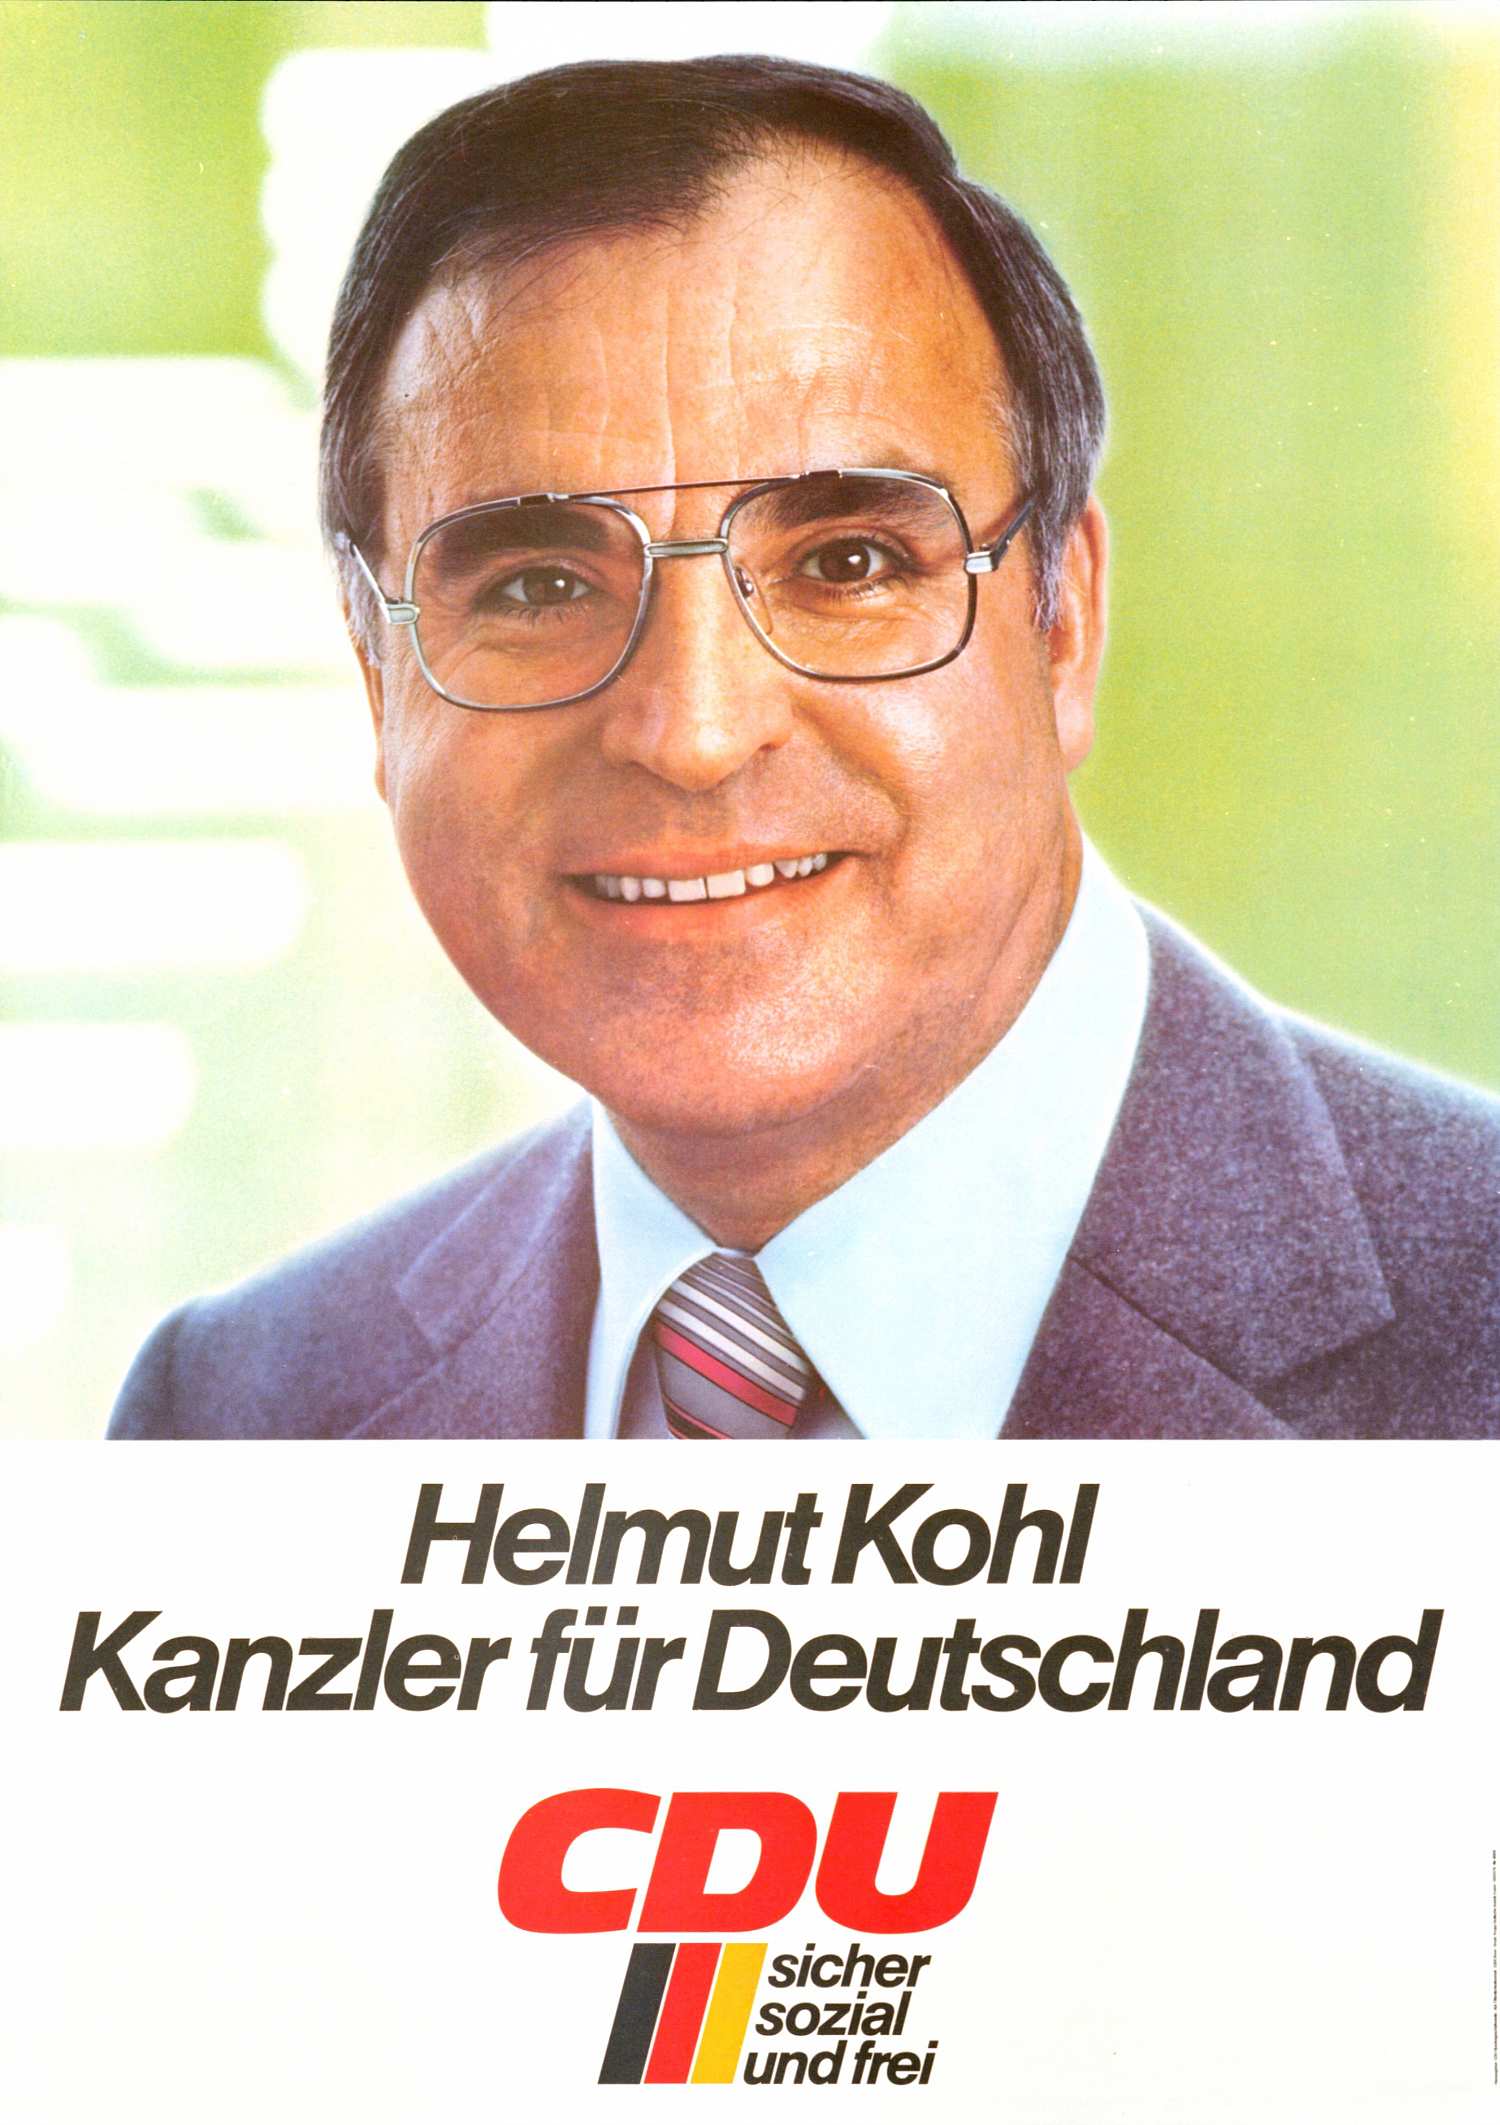 Porträtfoto Helmut Kohls (Farbe); darunter auf weißem Feld: Helmut Kohl / Kanzler für Deutschland / CDU / sicher / sozial / frei.